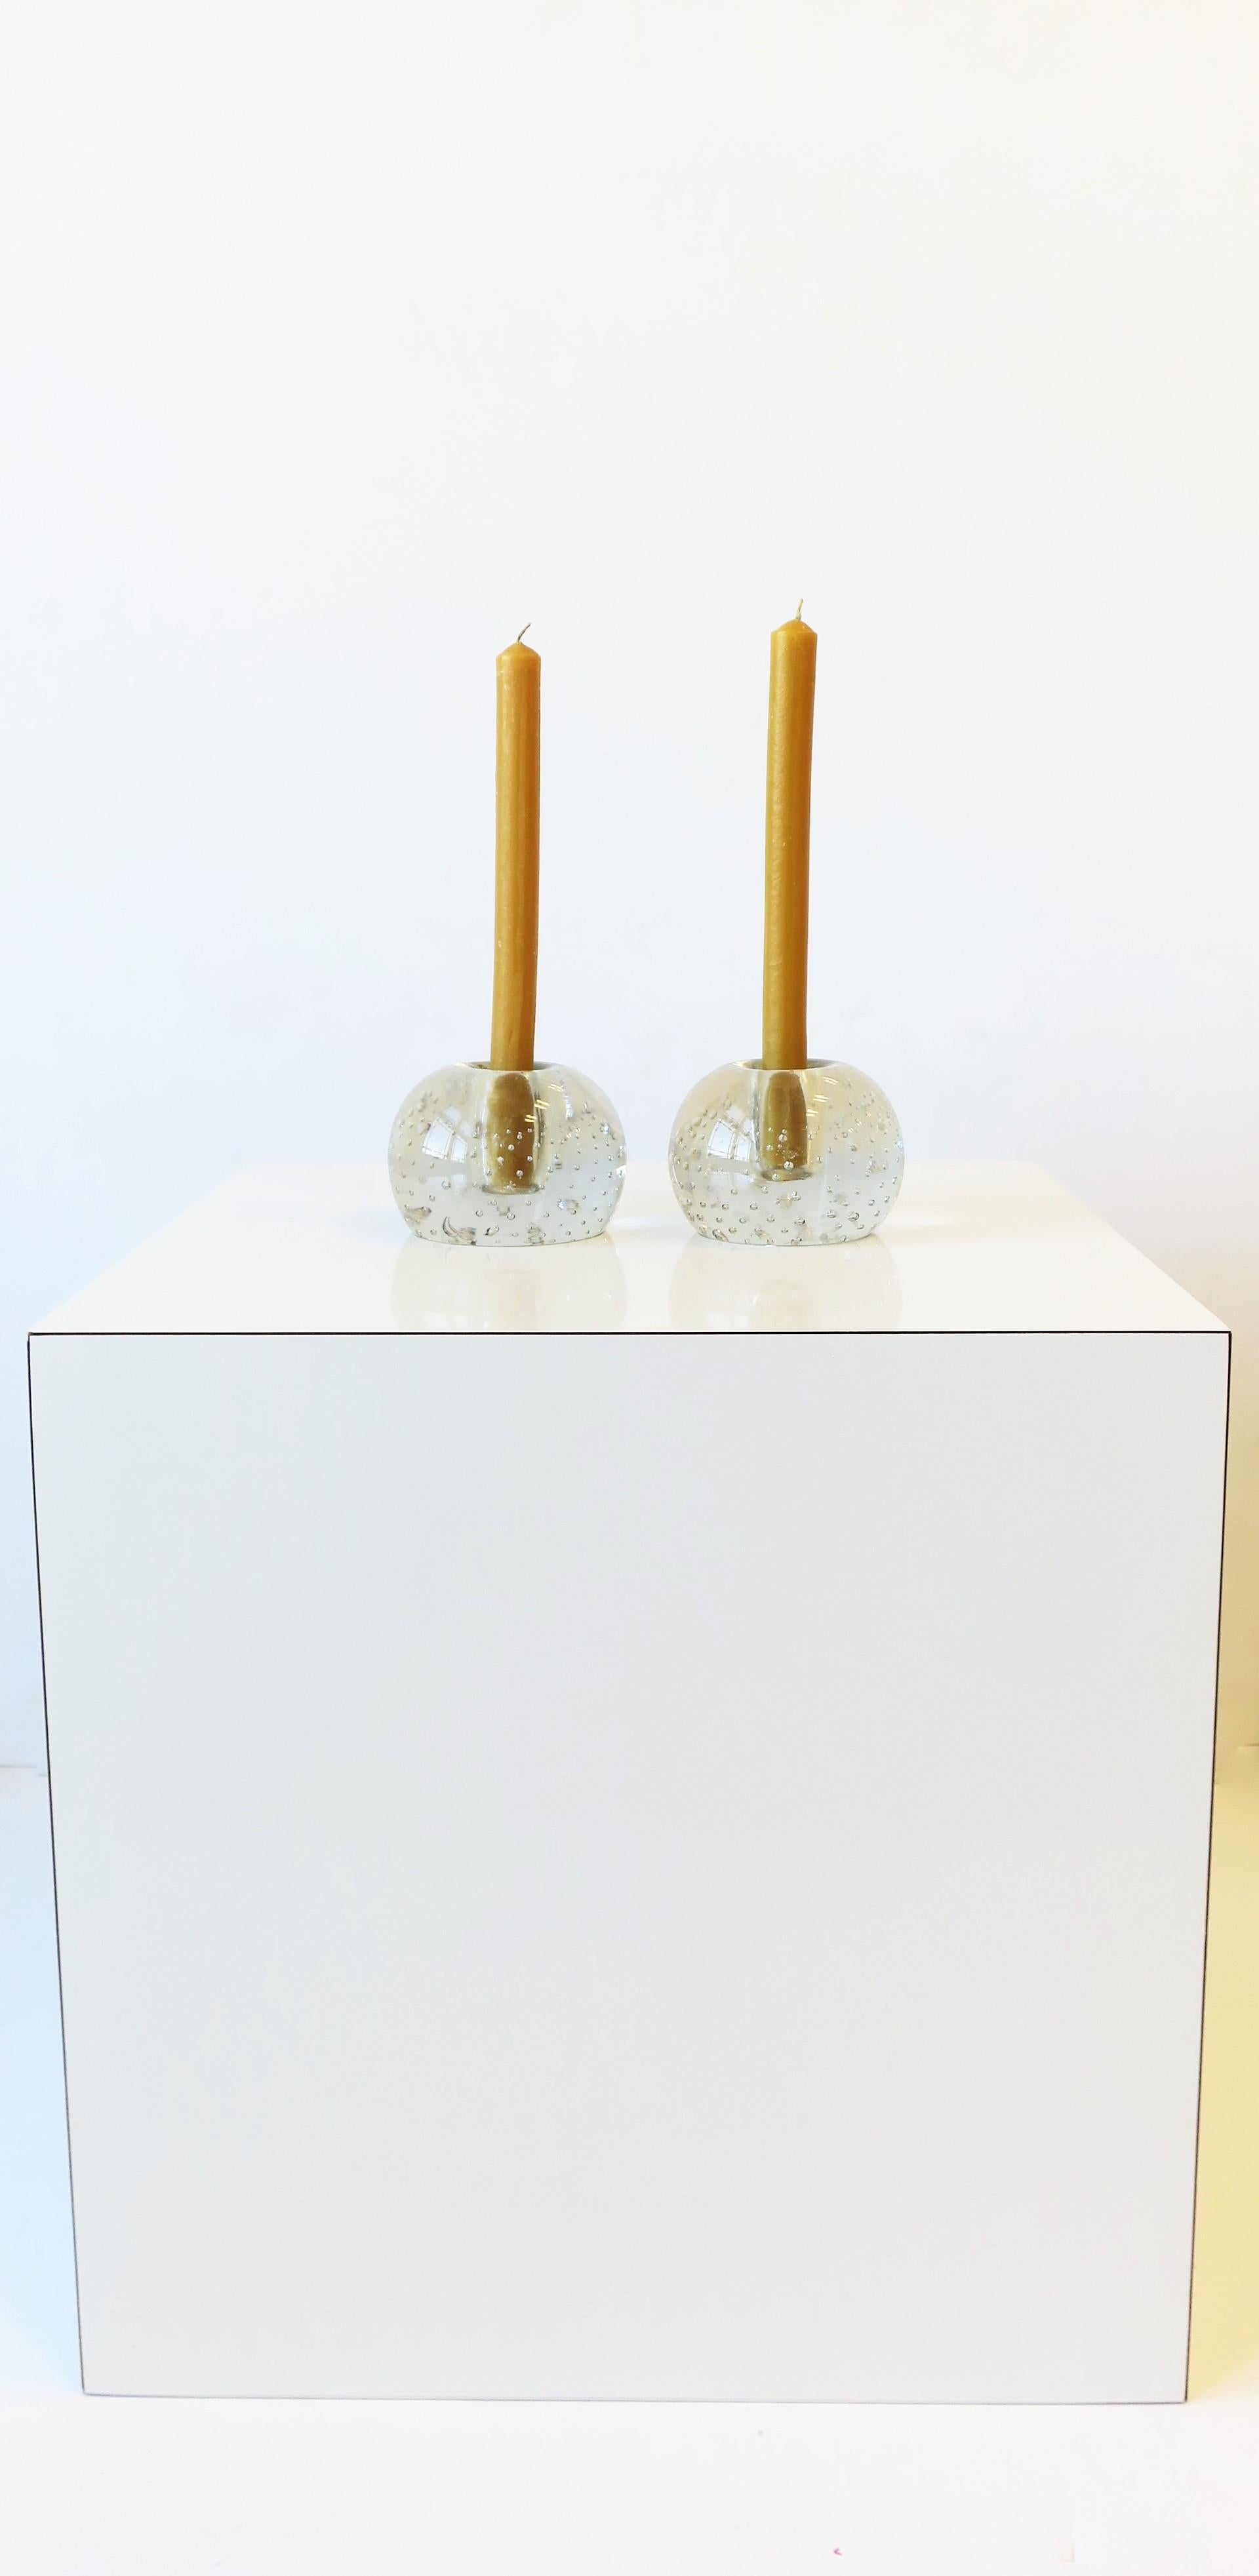 Mid-20th Century Scandinavian Modern Art Glass Candlestick Holders, Pair